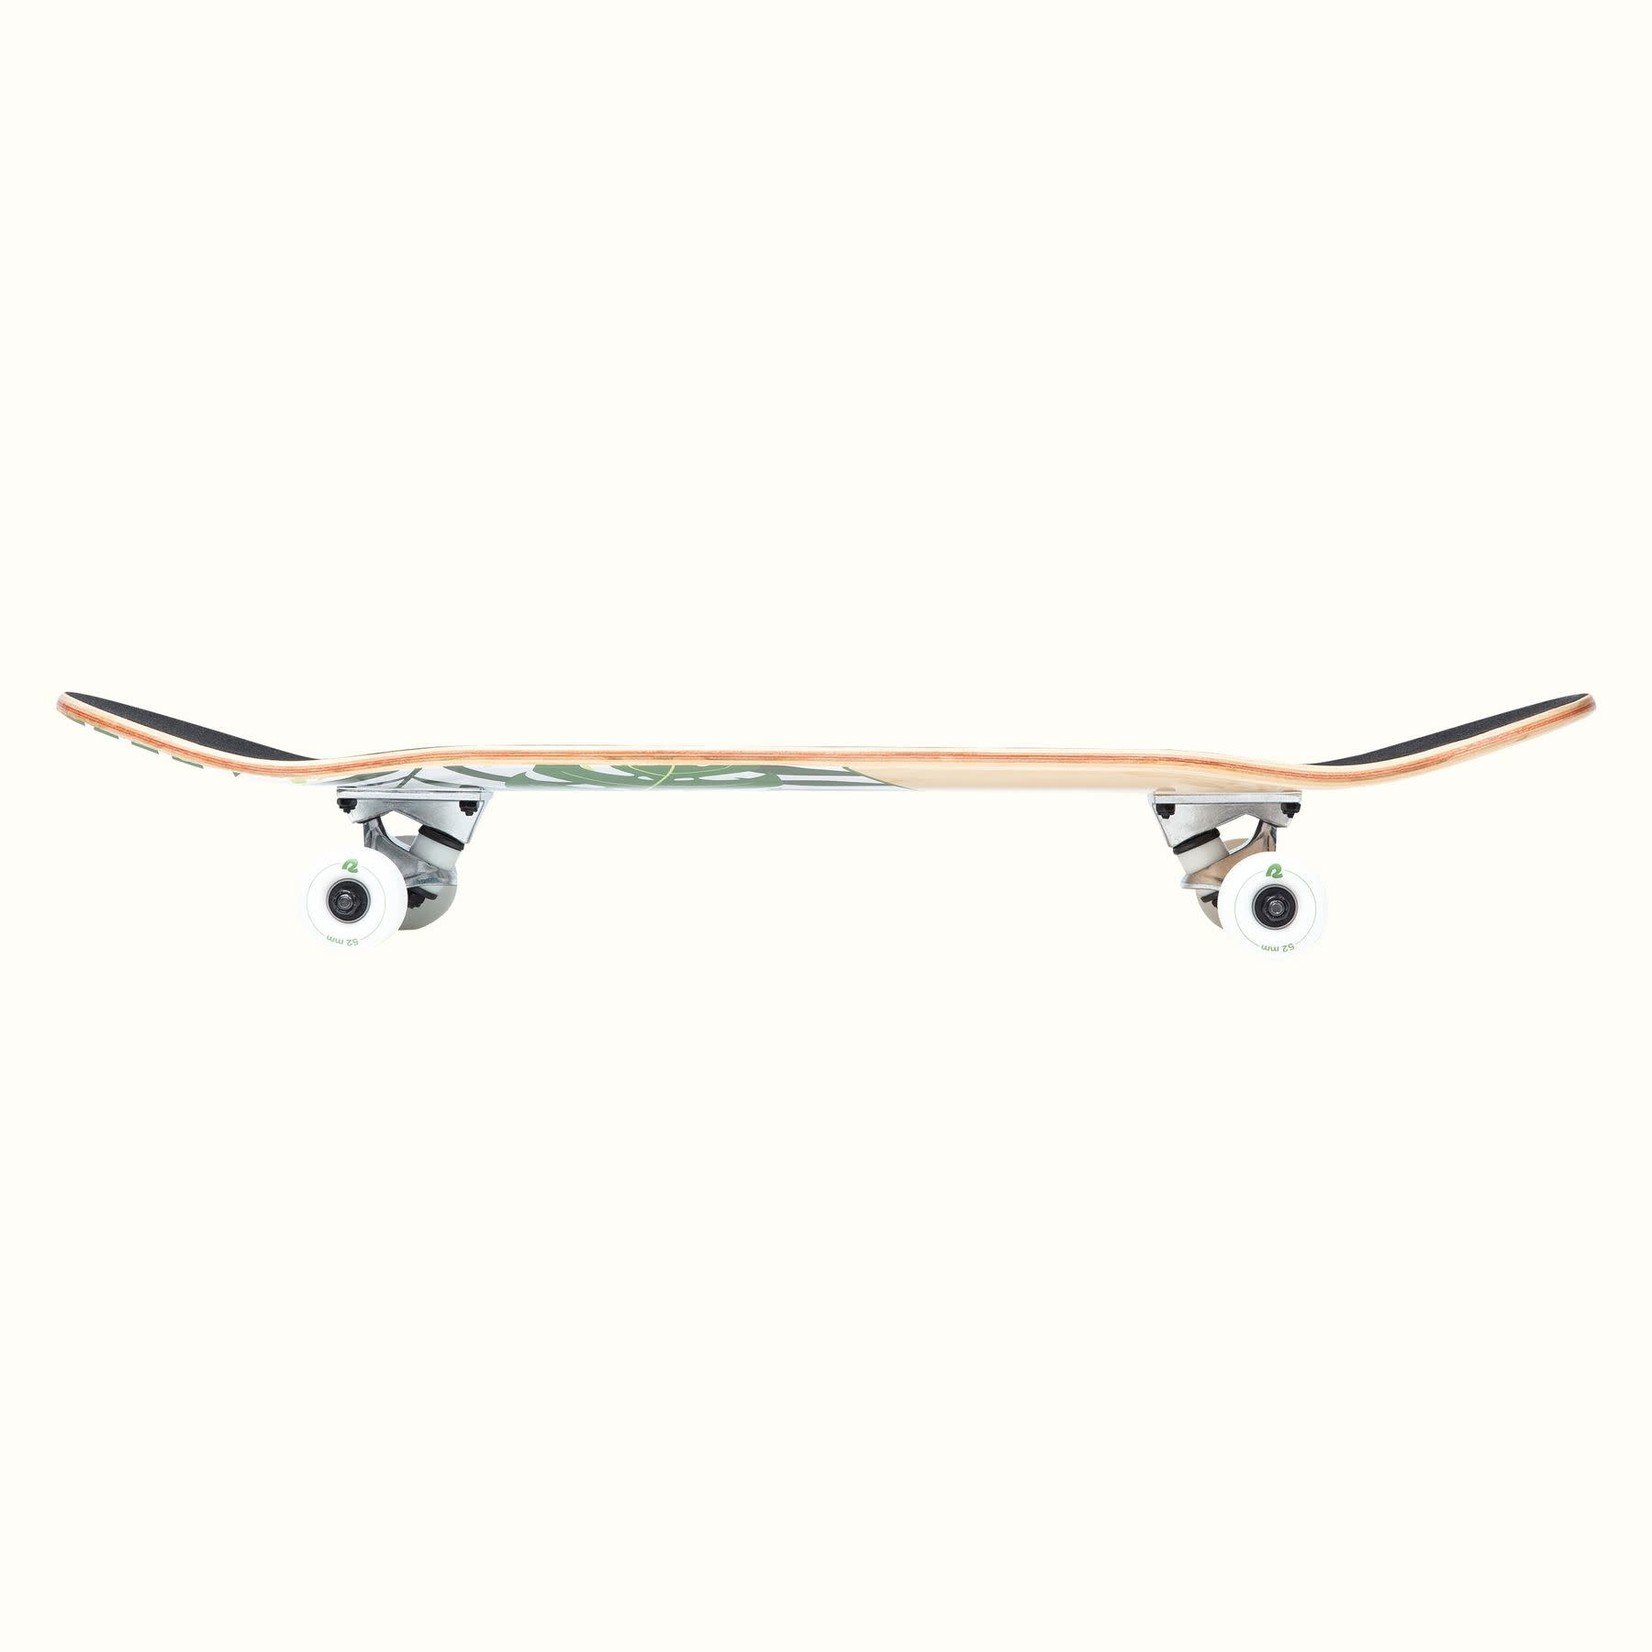 Retrospec Alameda Skateboard